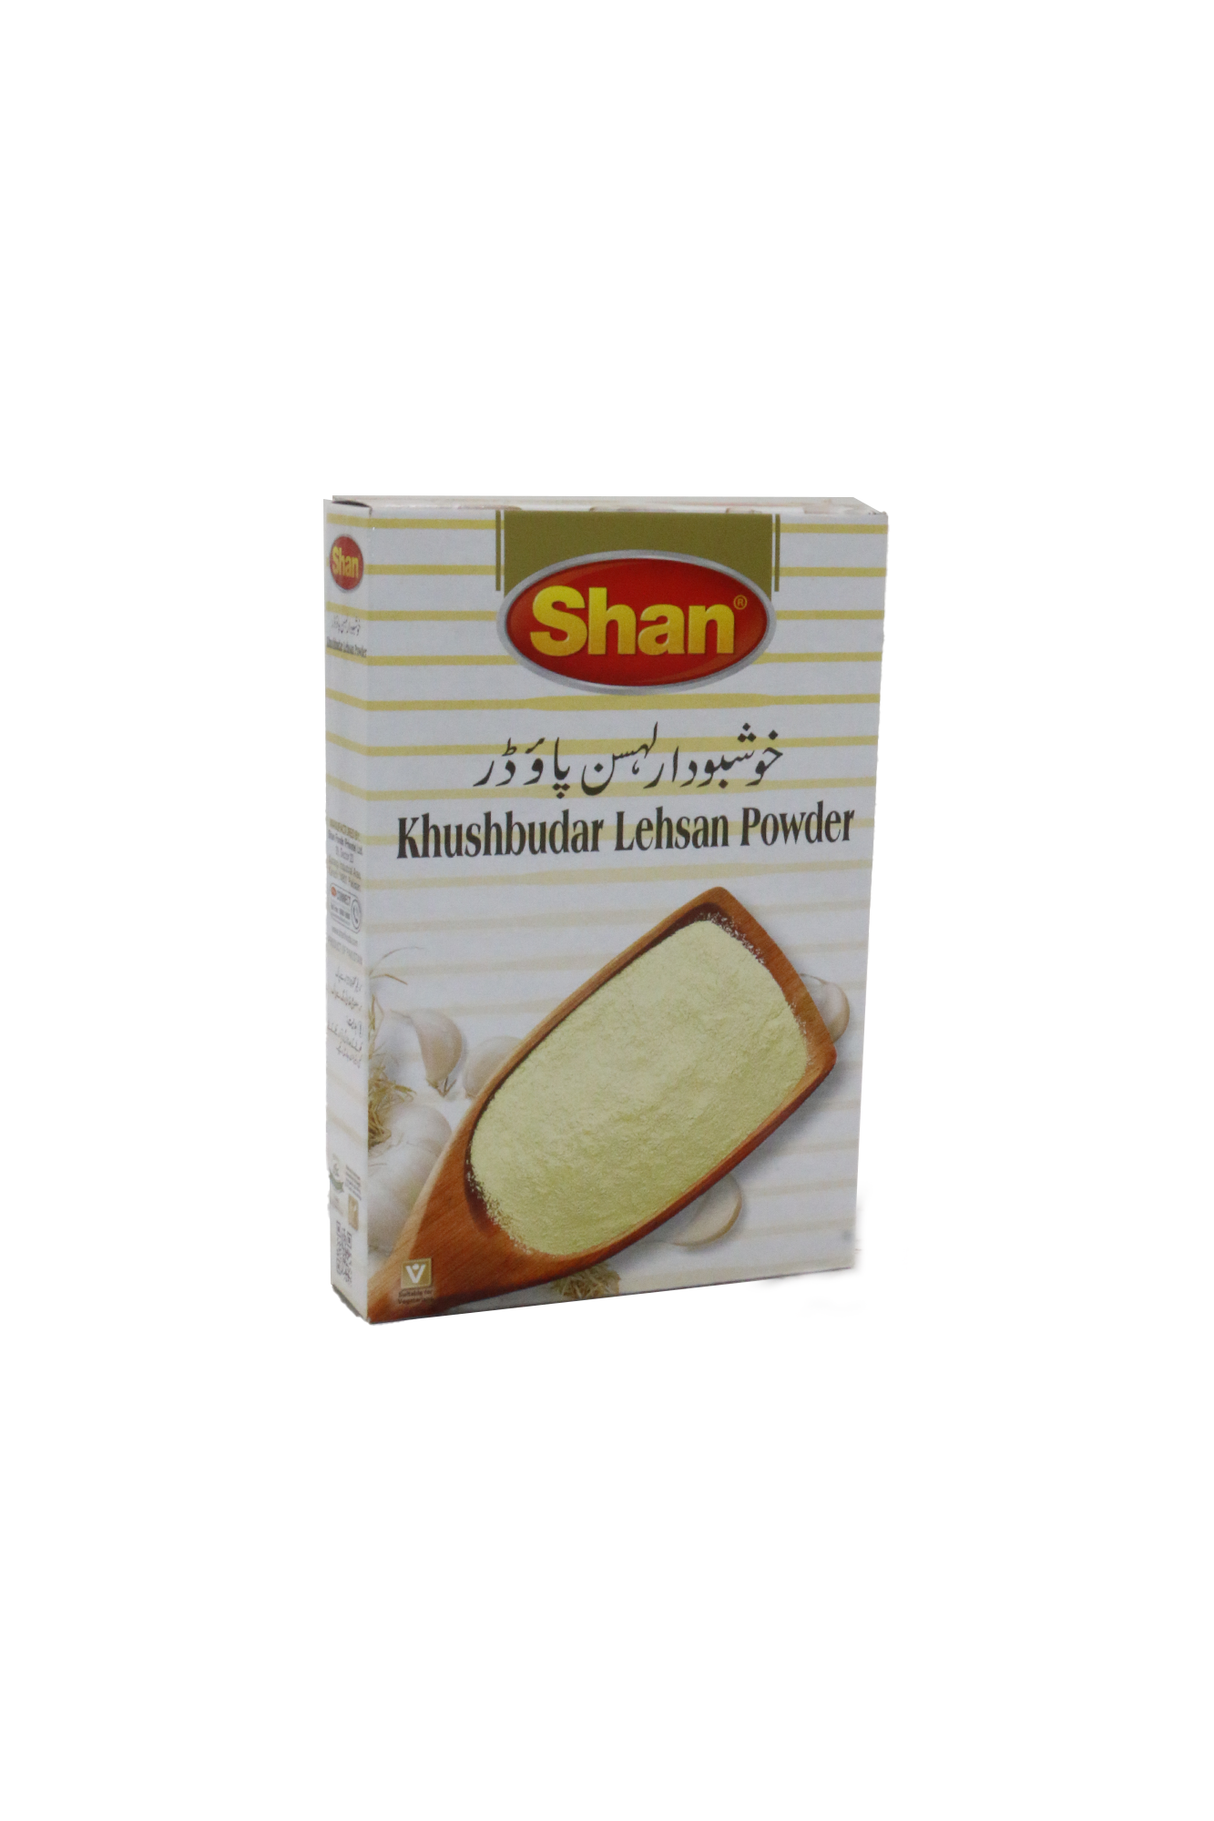 shan garlic powder 50g